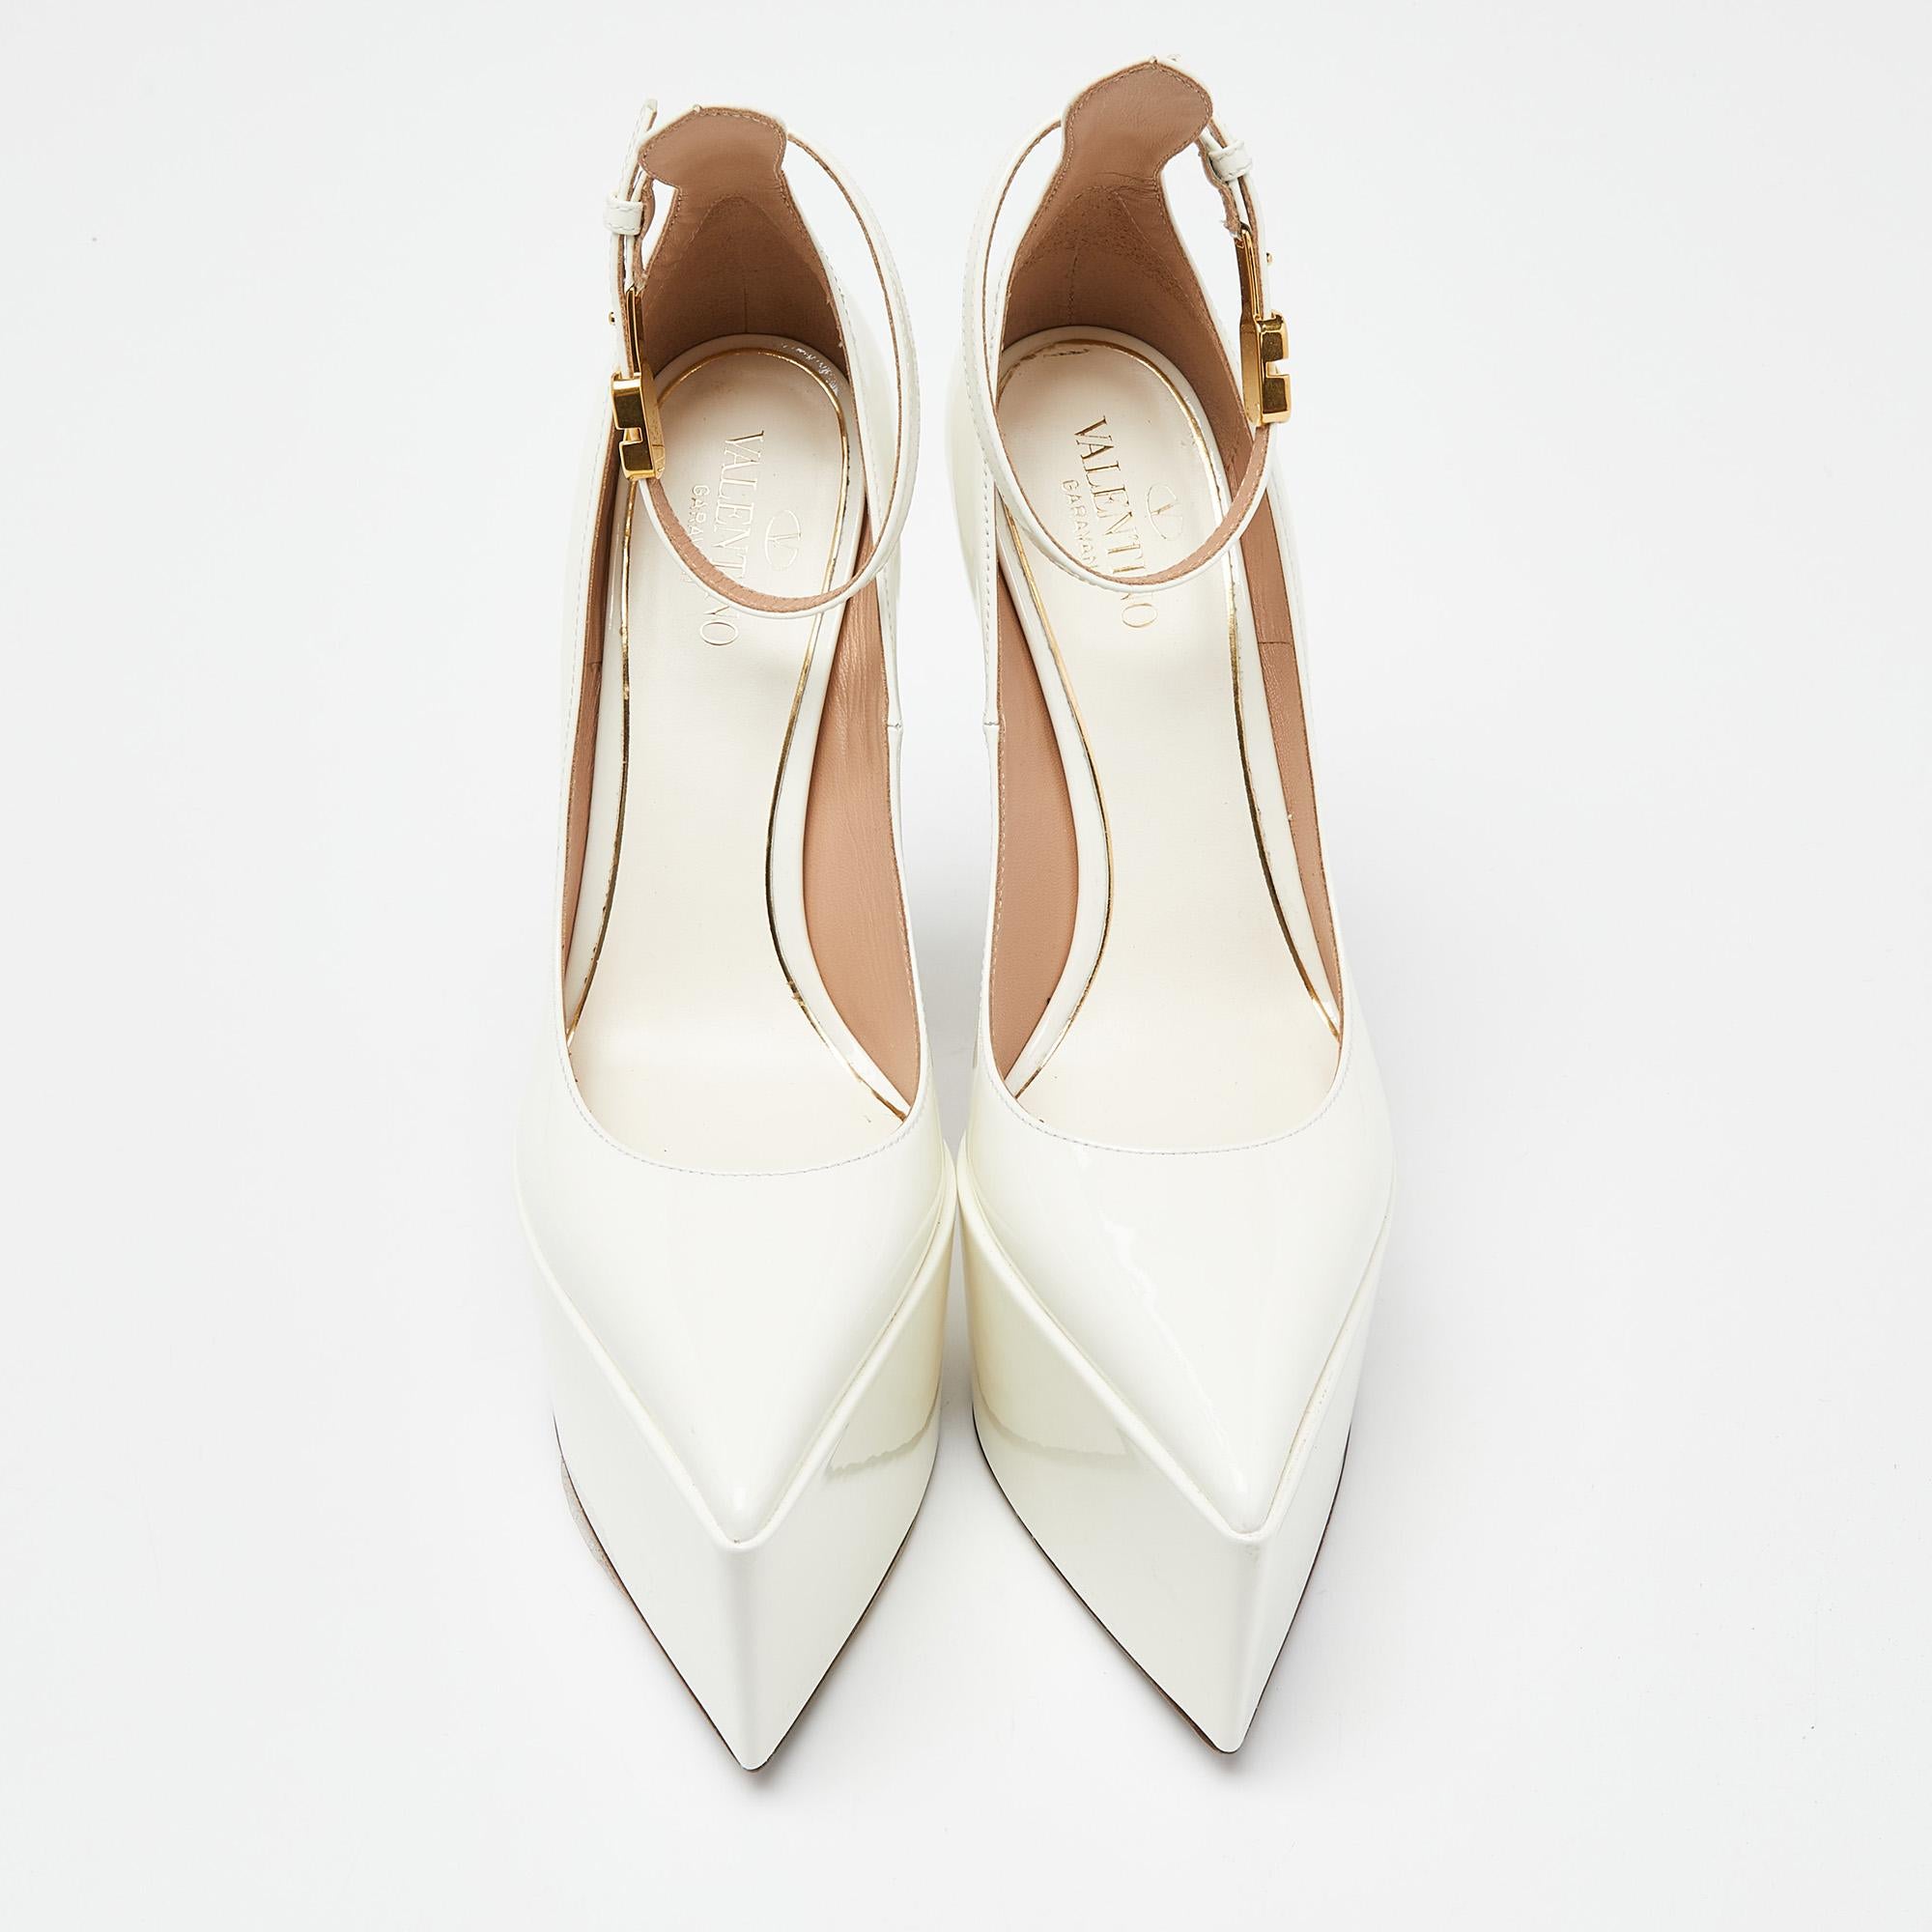 Entdecken Sie die Eleganz der Schuhe mit diesen Damenpumps von Valentino. Diese sorgfältig entworfenen Absätze vereinen Mode und Komfort und sorgen dafür, dass Sie in jeder Umgebung glänzen.

Enthält
Original Staubbeutel, Original Box, Info-Booklet